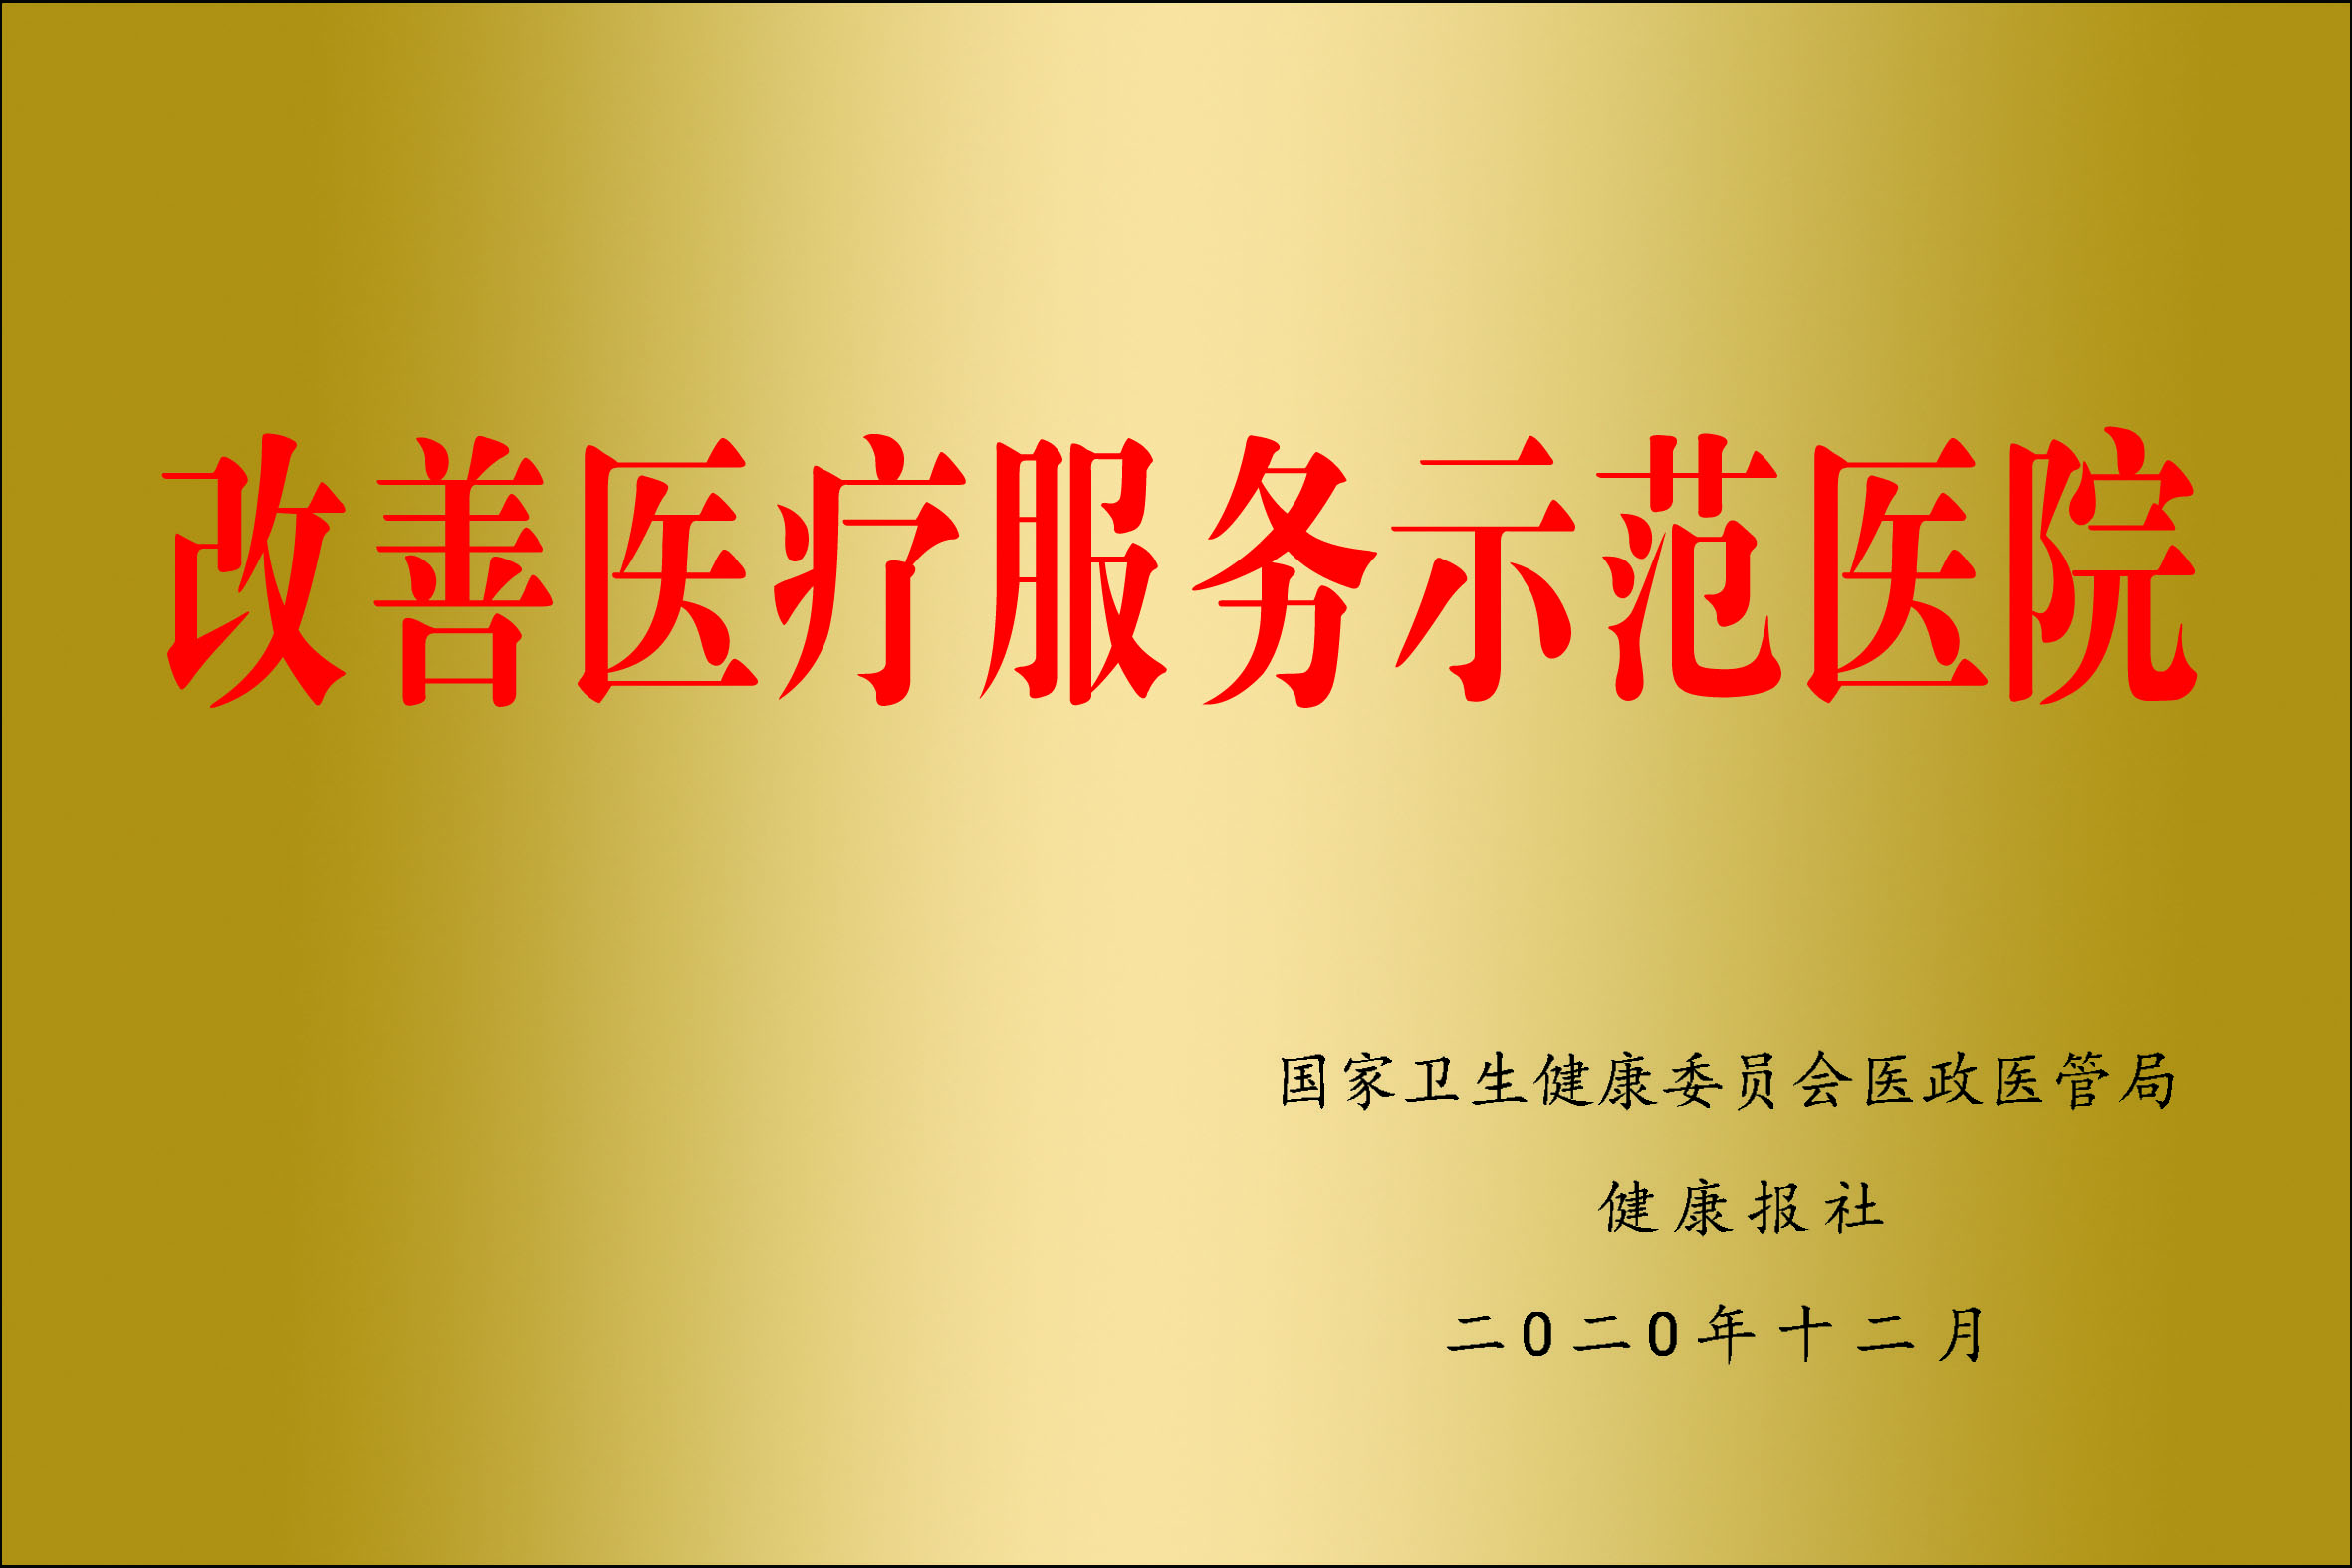 蒙阴县鸿阳汽贸物流园项目奠基仪式举行--中国崮文化网